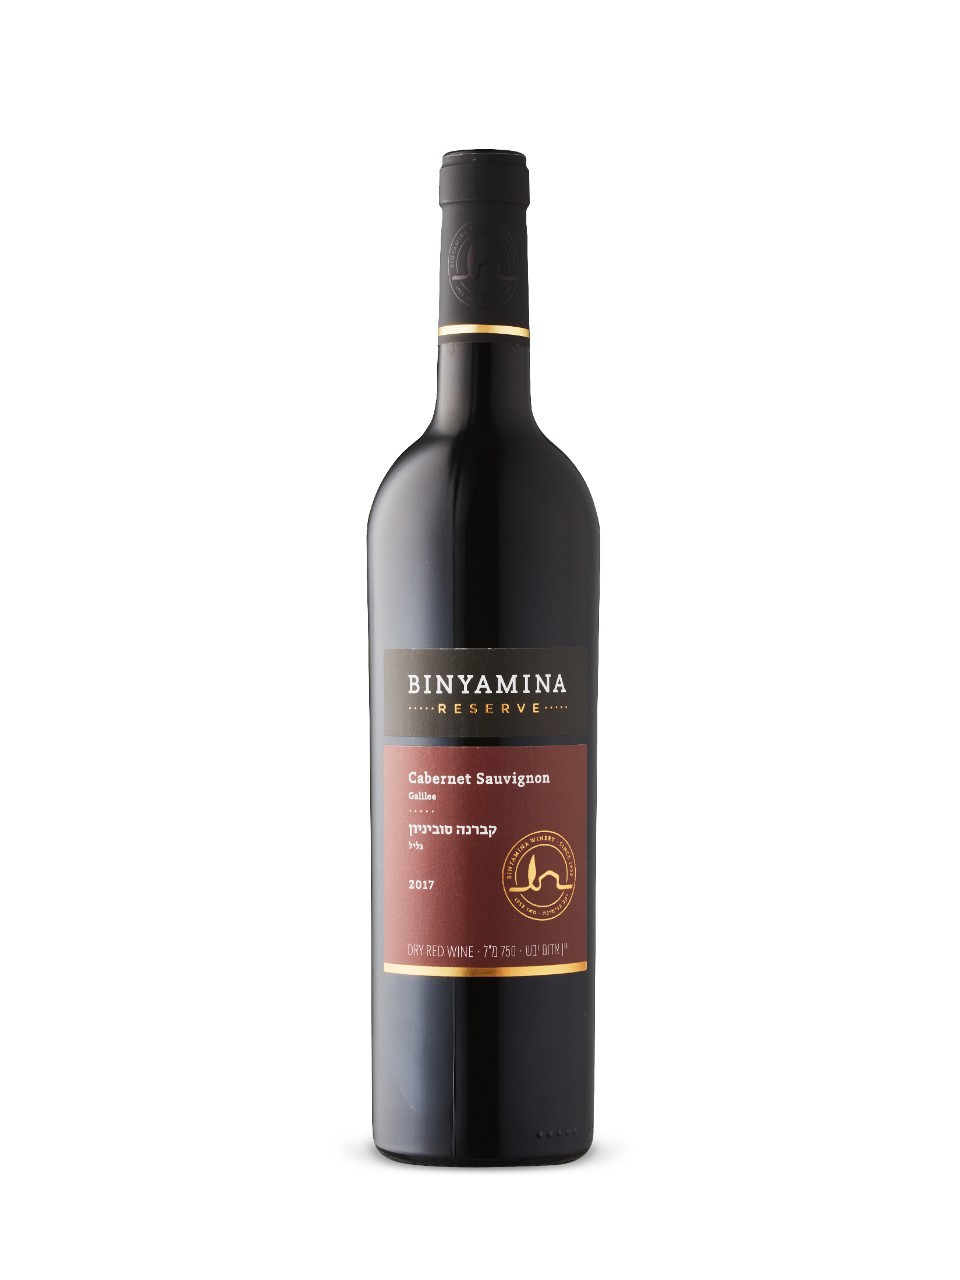 Binyamina reserve cabernet sauvignon kosher 2017 cabernet sauvignon  750 ml bottle 